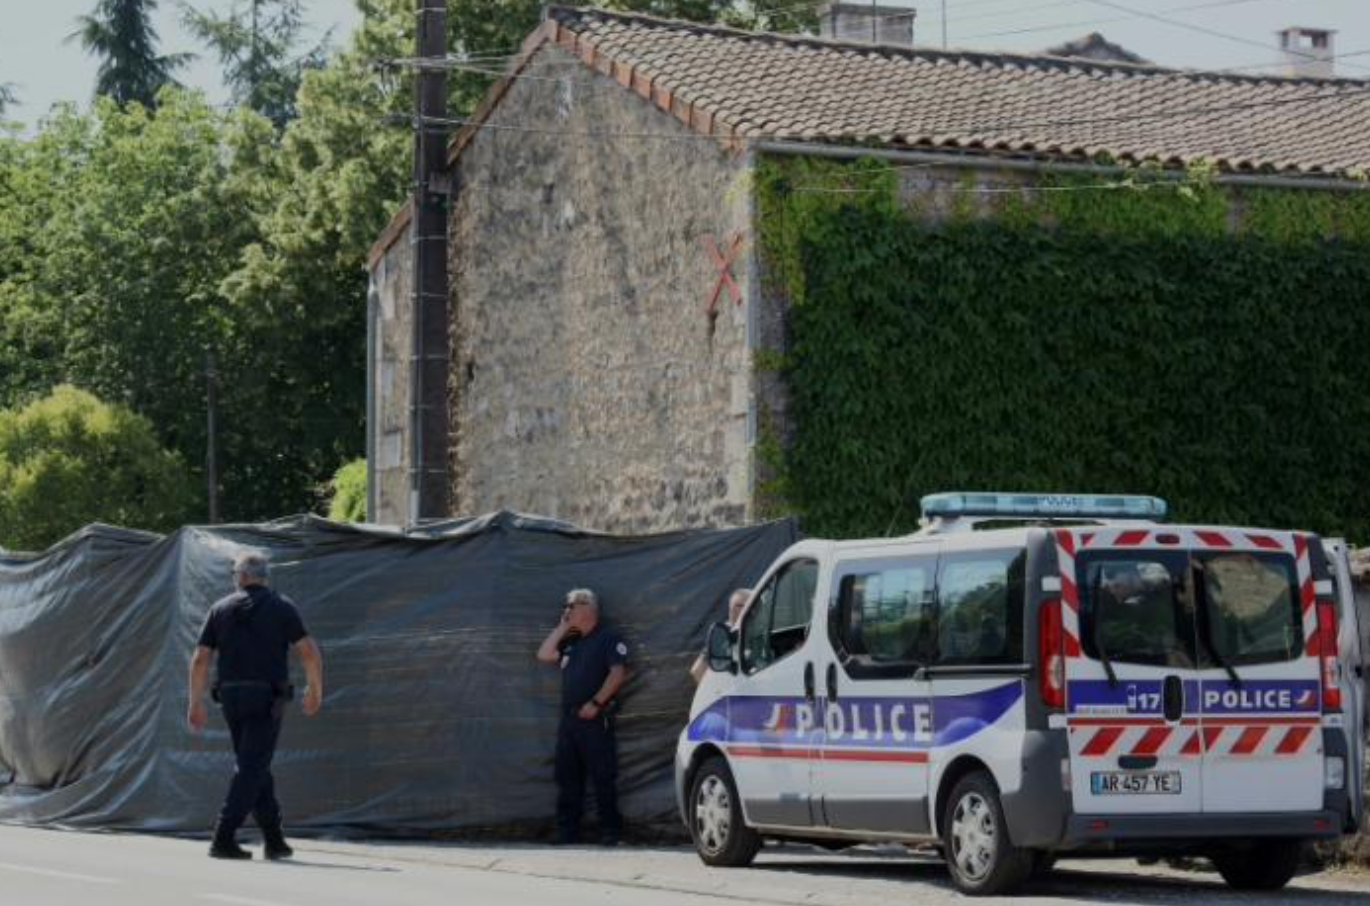 Γαλλία: Εκκενώθηκε λόγω απειλής για βόμβα το σχολείο όπου έπεσε νεκρός εκπαιδευτικός